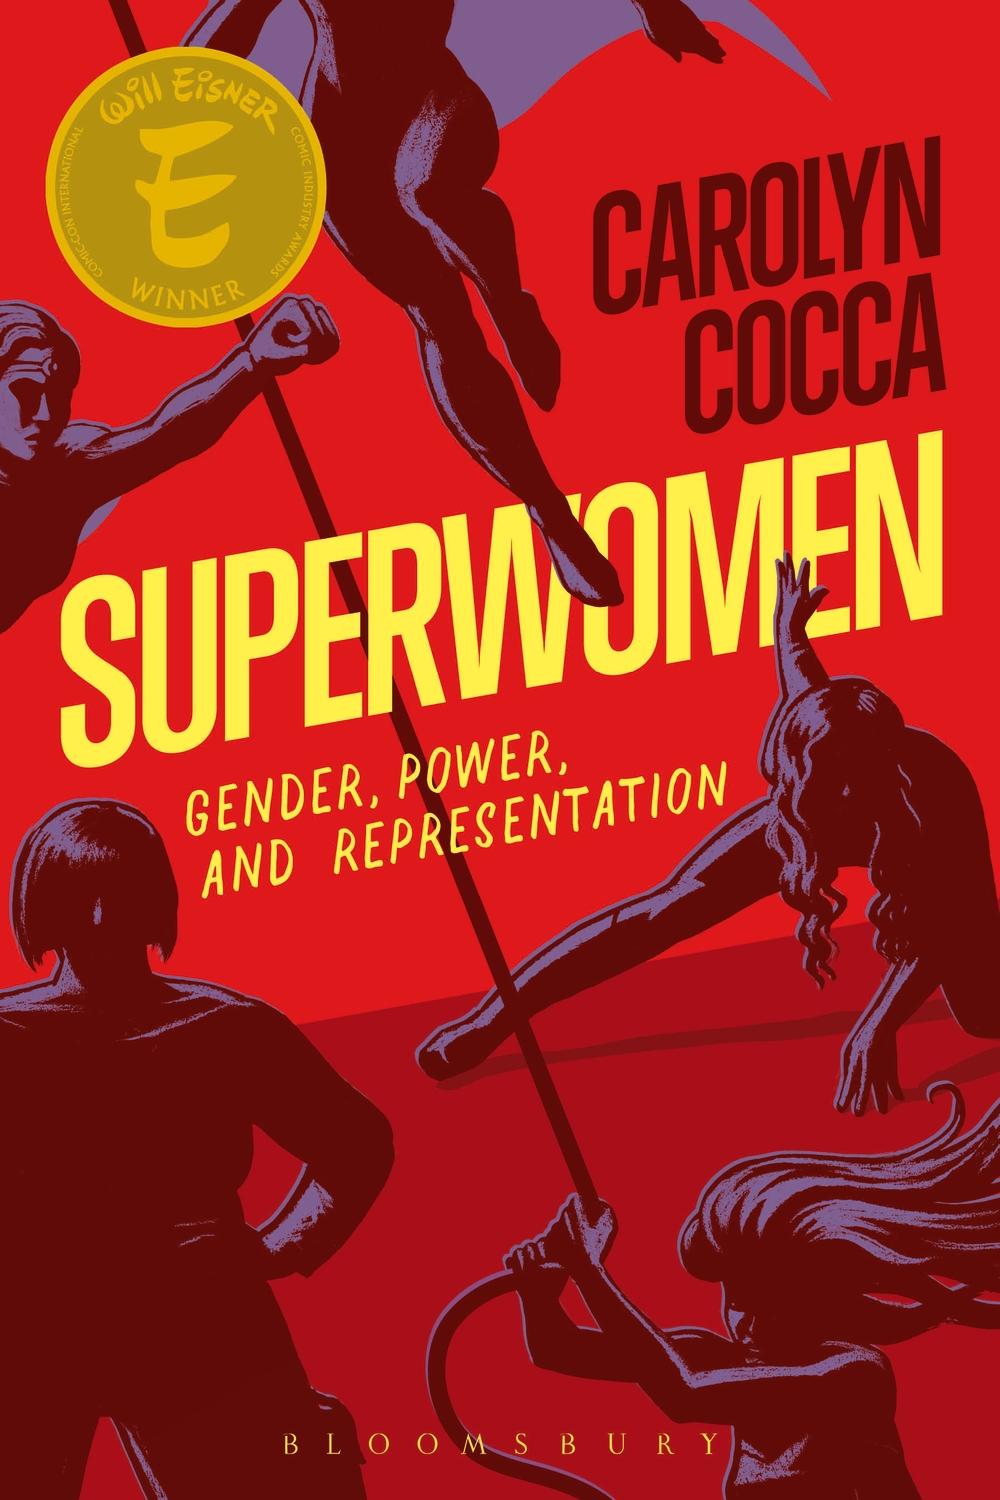 Superwomen - Carolyn Cocca